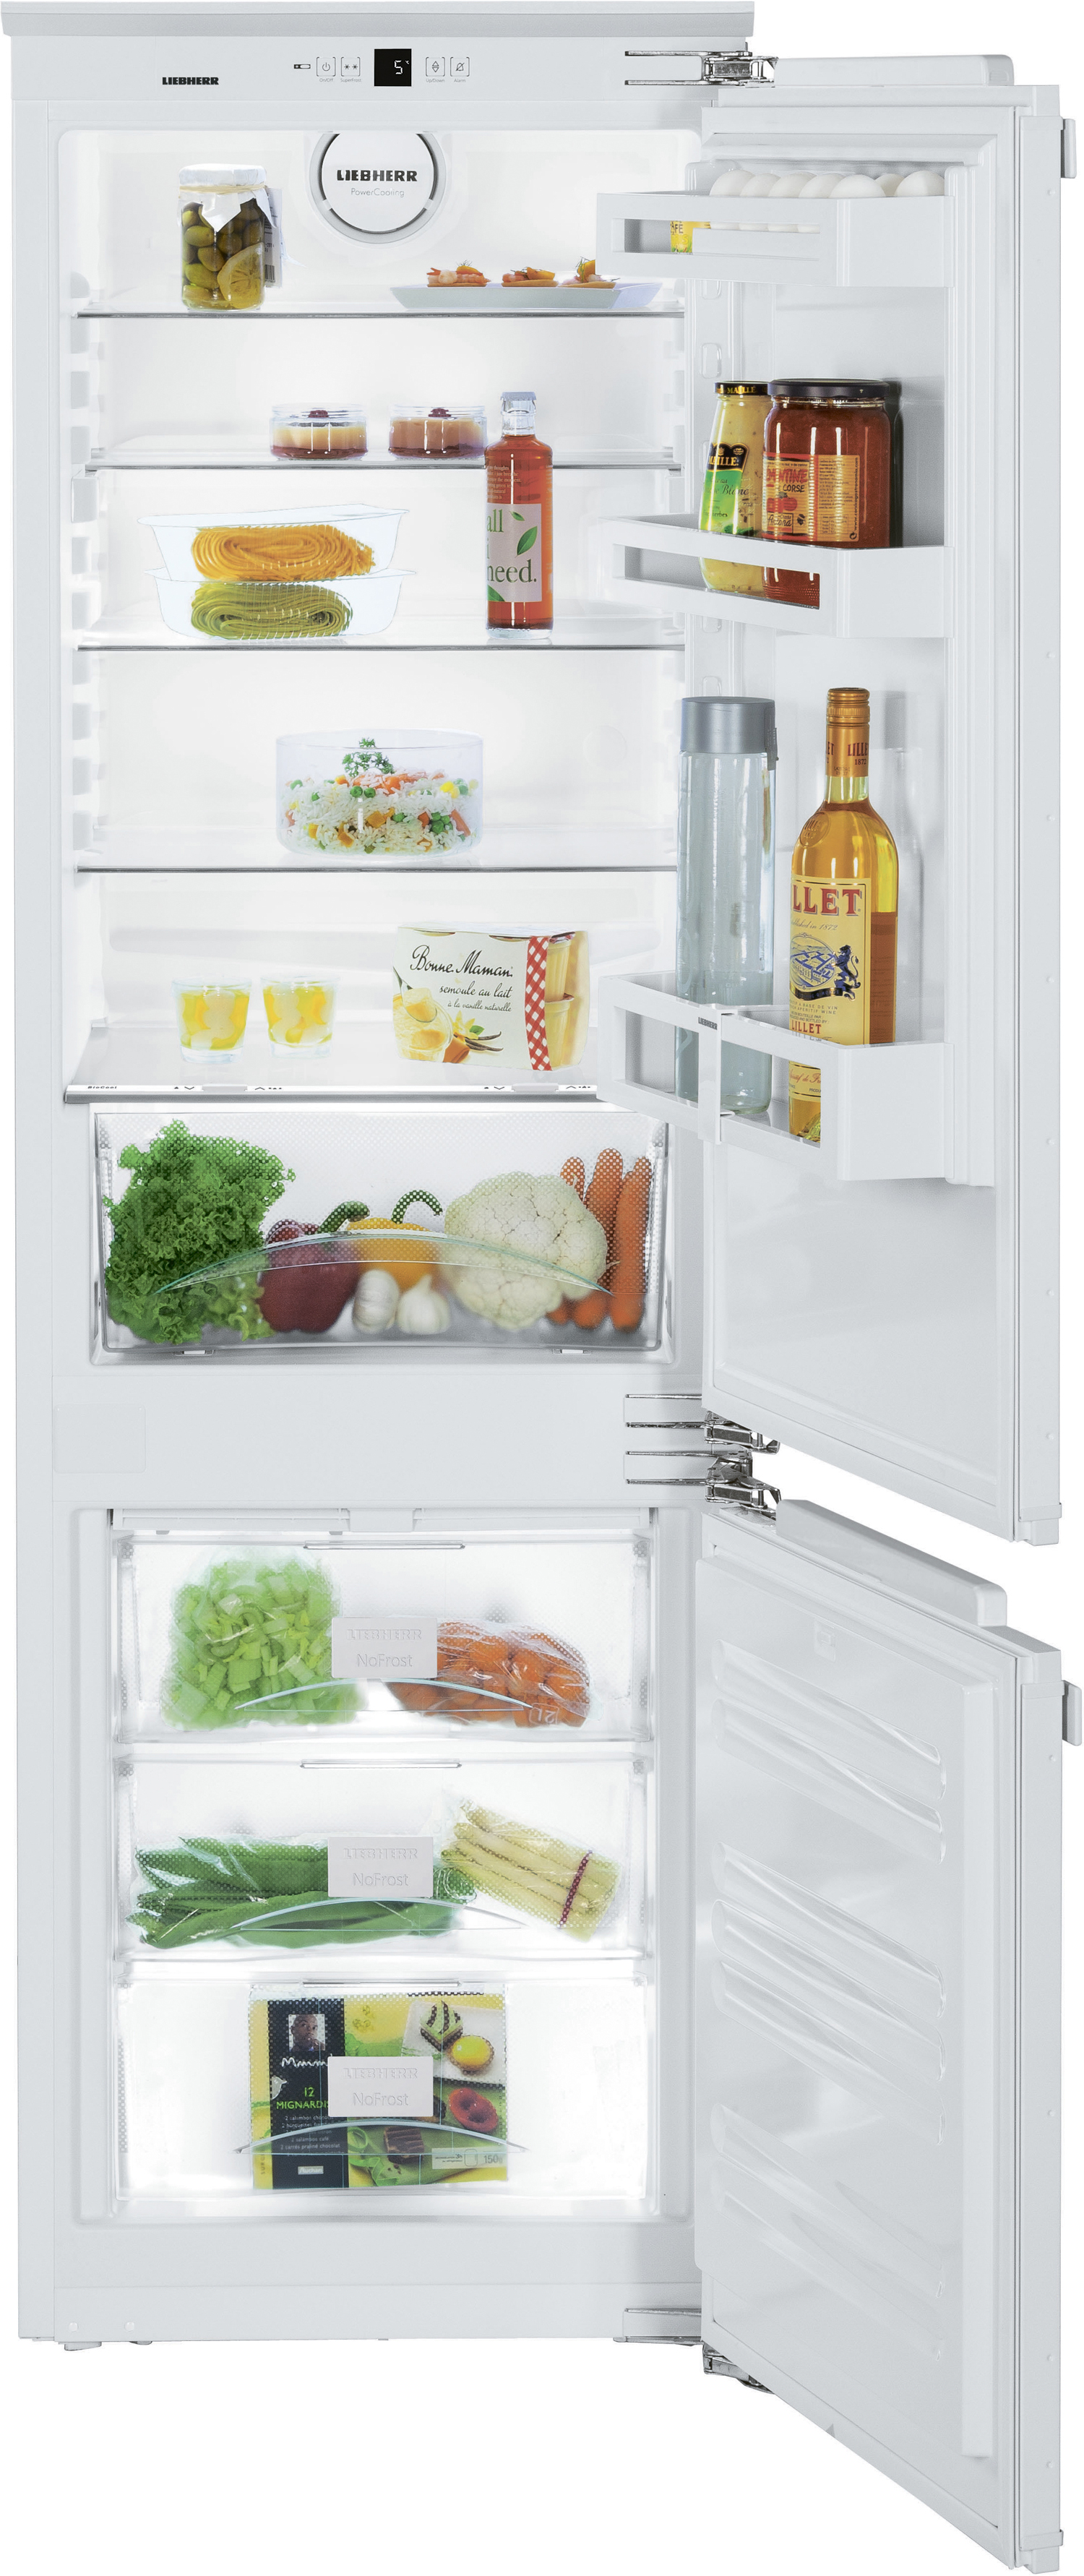 Холодильник встраиваемый двухкамерный no frost